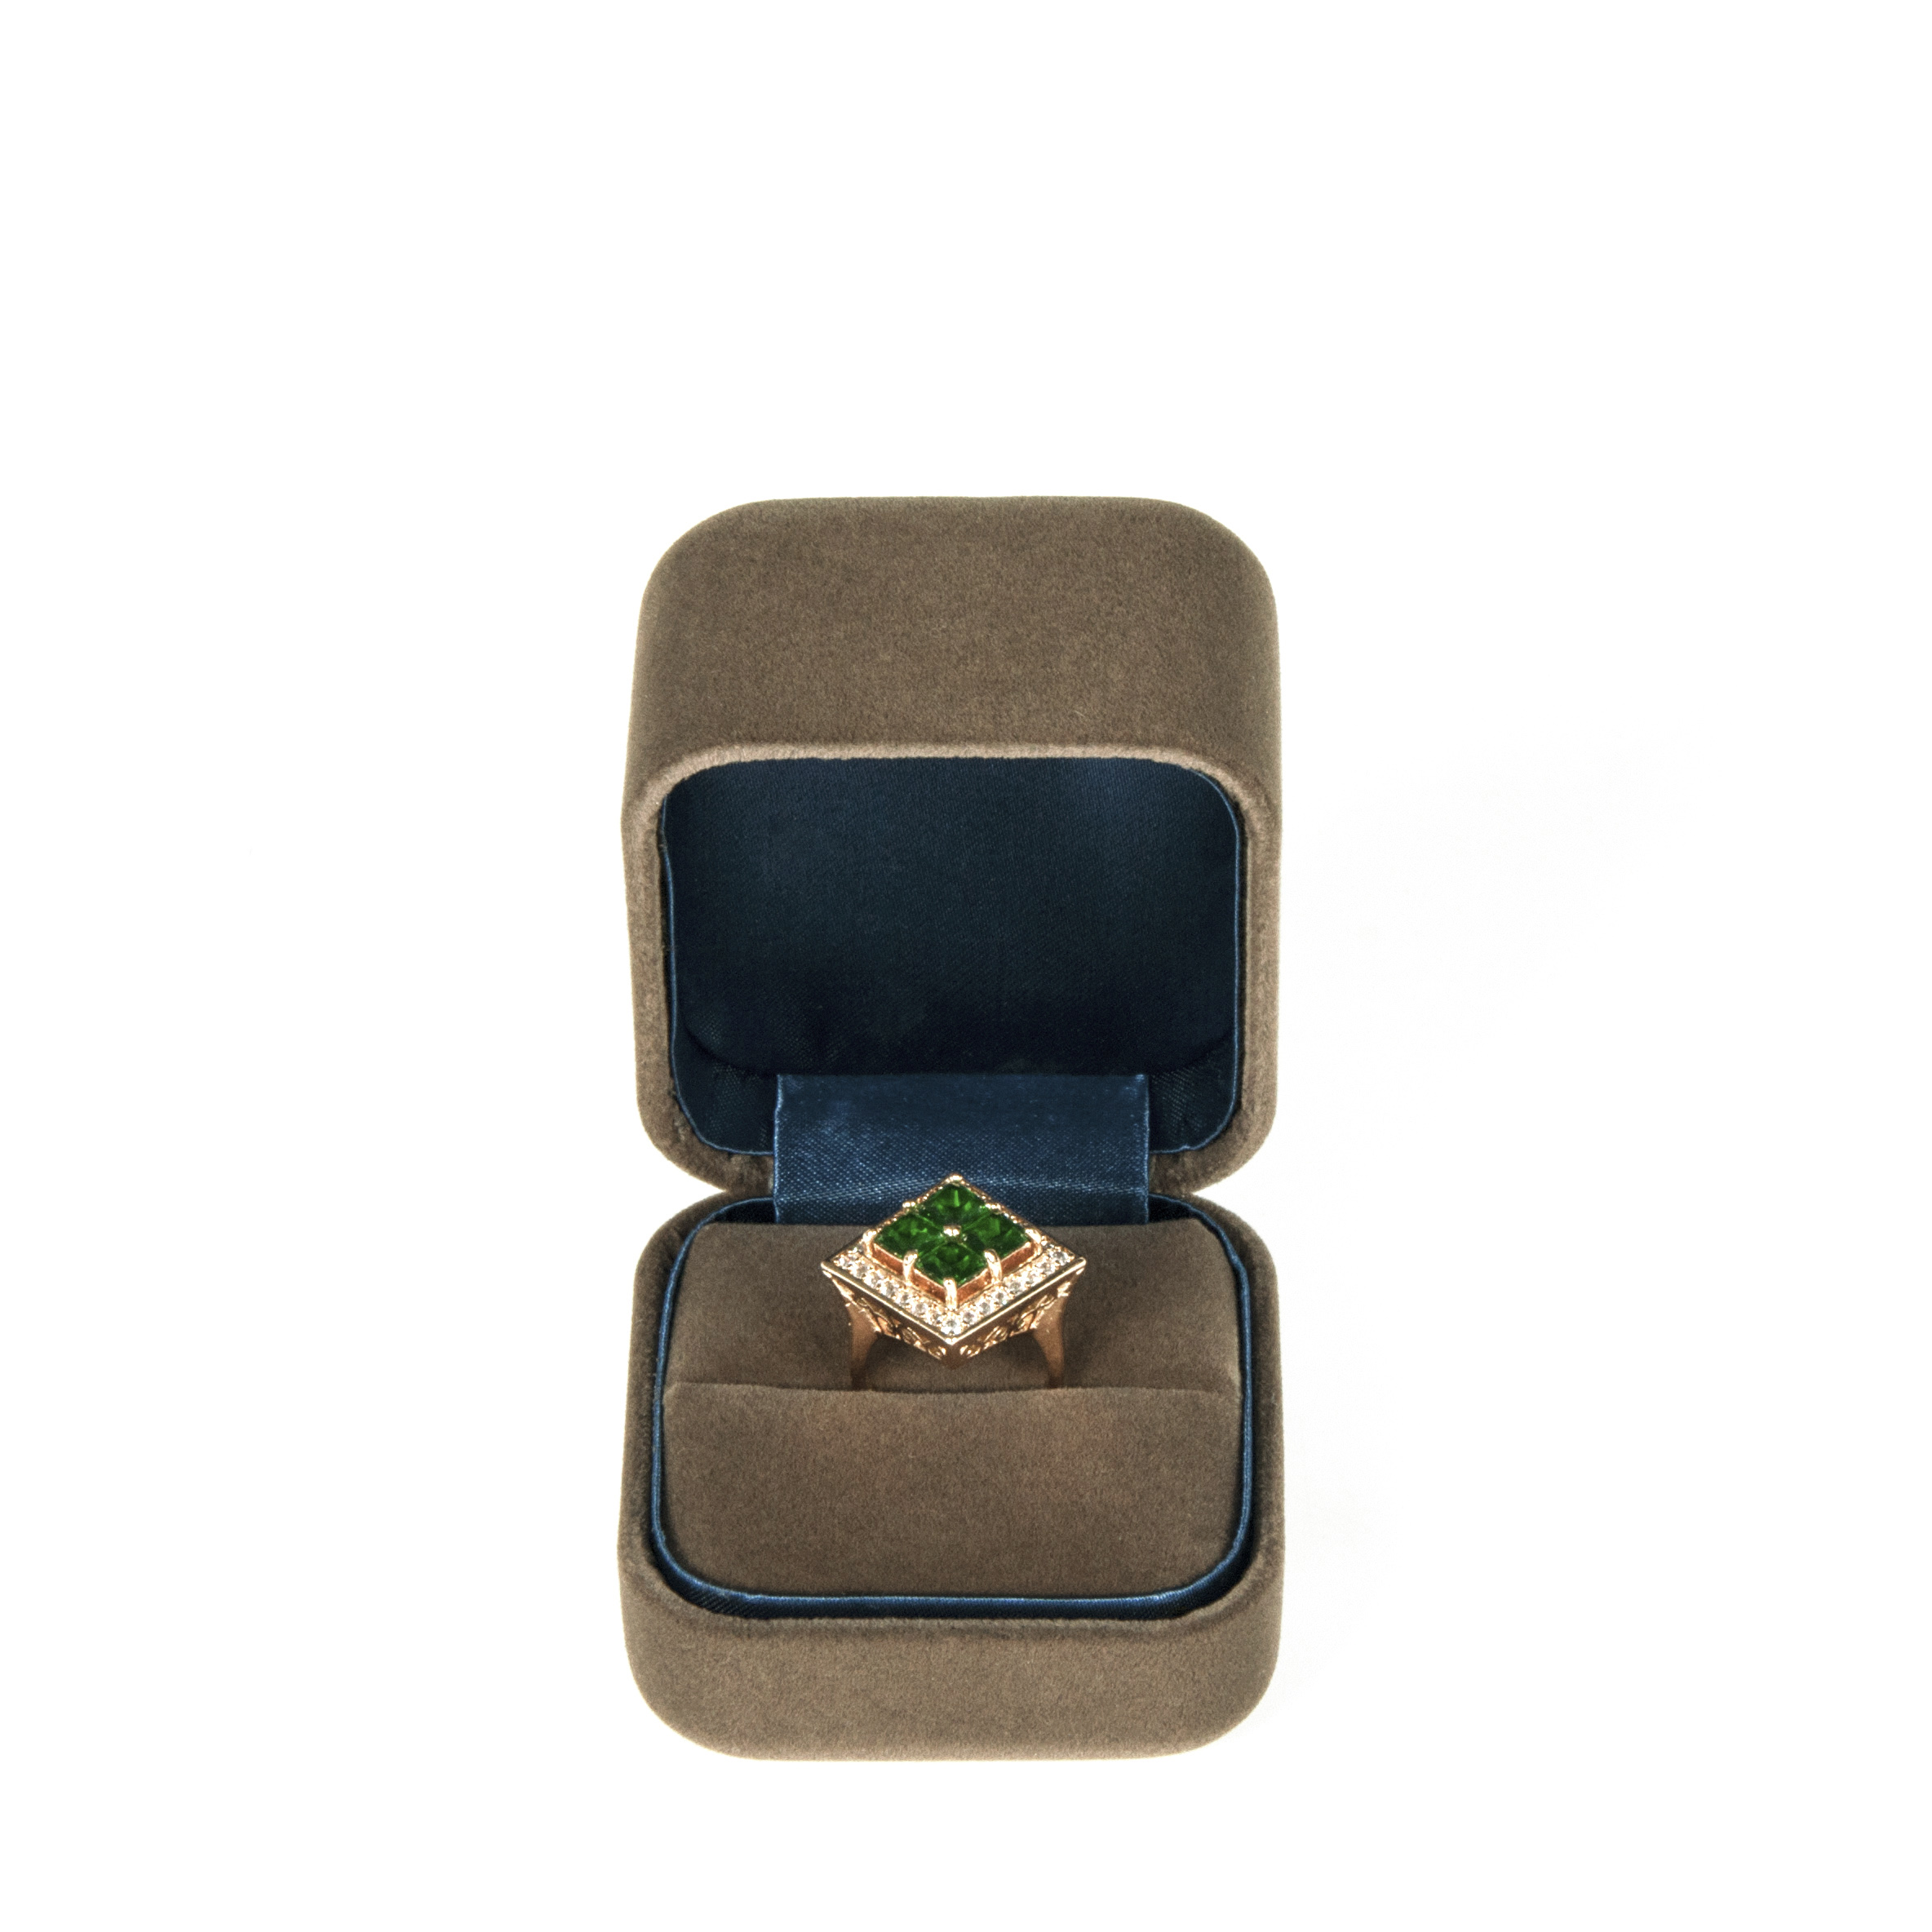 Популярная подгонянная конструкция коробки кольца бархата для пакета ювелирных изделий высокого конца тонкого с логосом напечатанным с высоким качеством ранга.